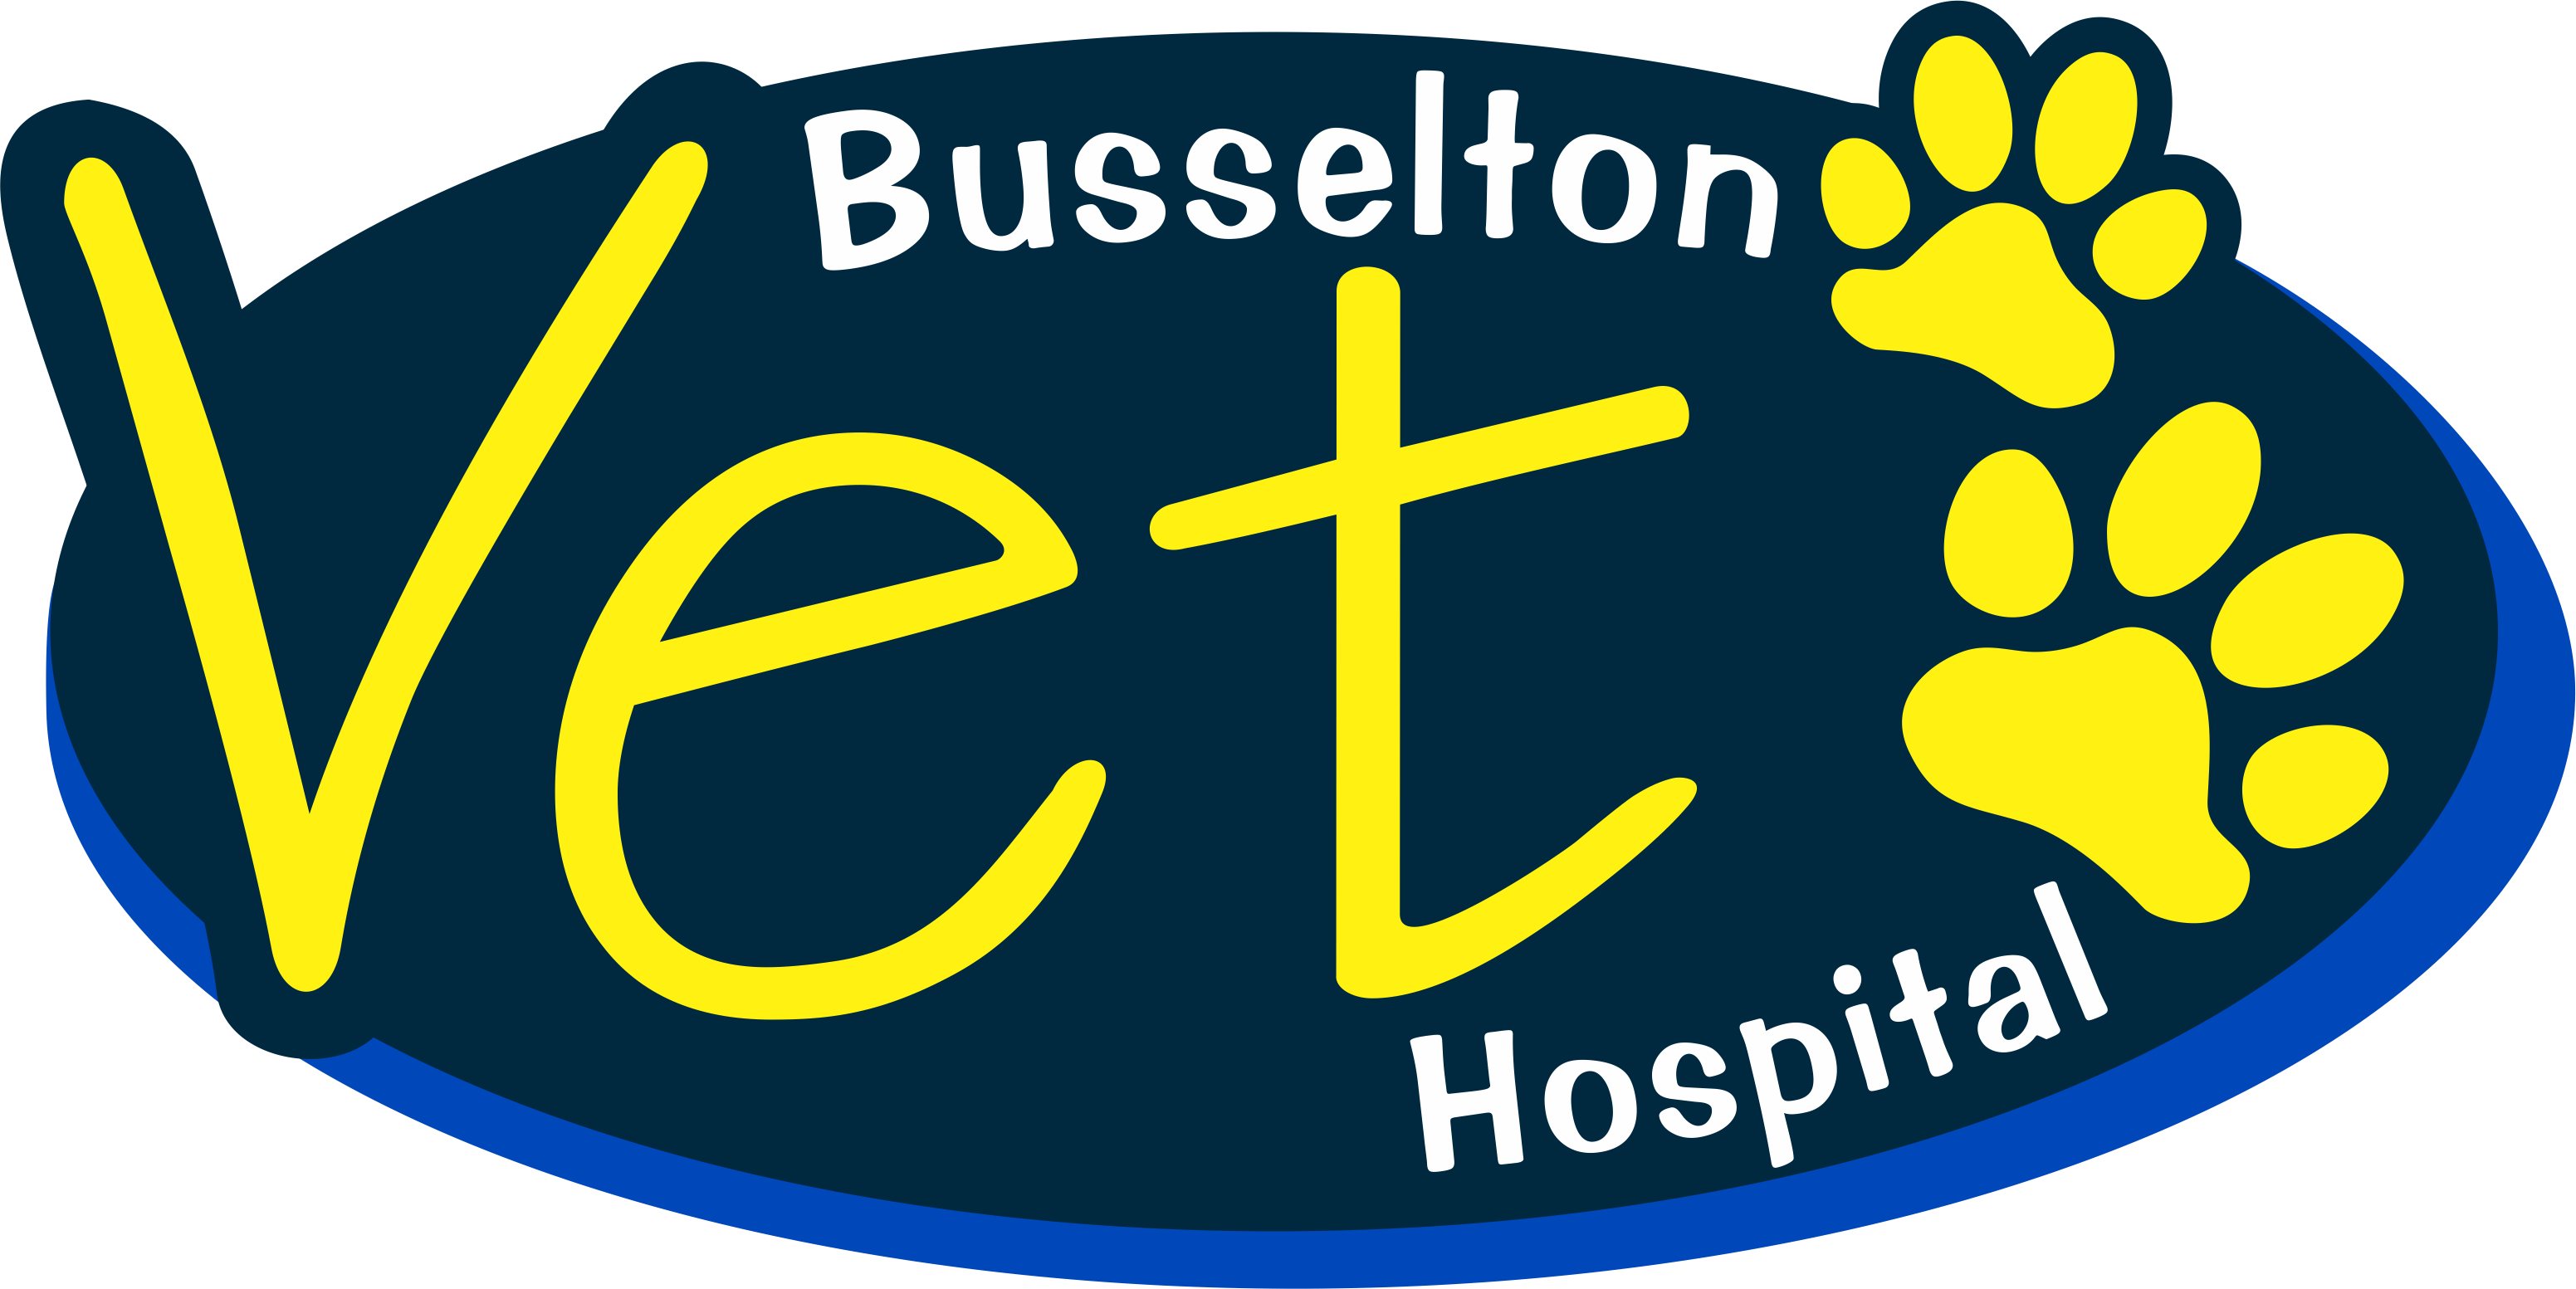 Busselton Vet Hospital